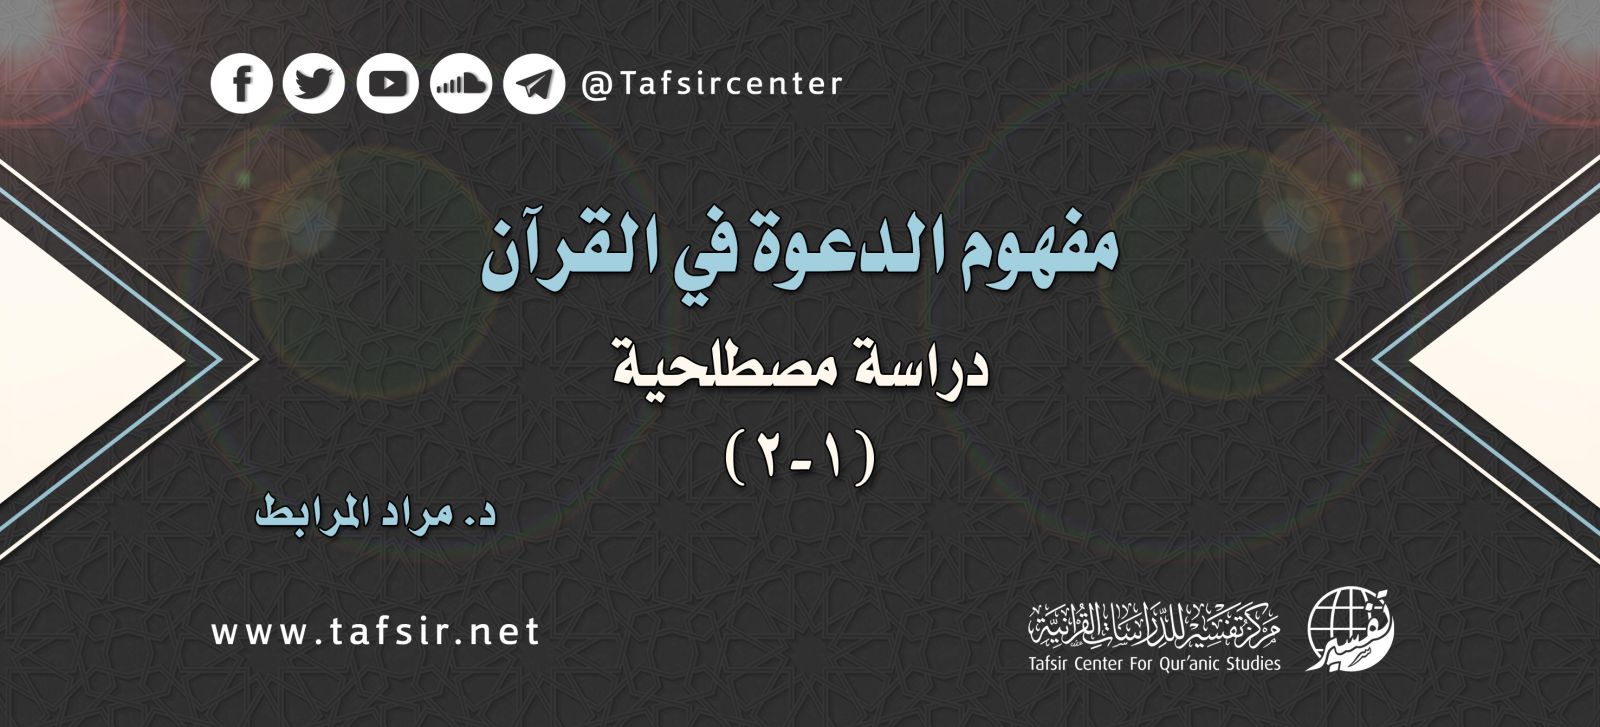 مفهوم الدعوة في القرآن دراسة مصطلحية 2 2 Tafsir Center For Quranic Studies مركز تفسير للدراسات القرآنية